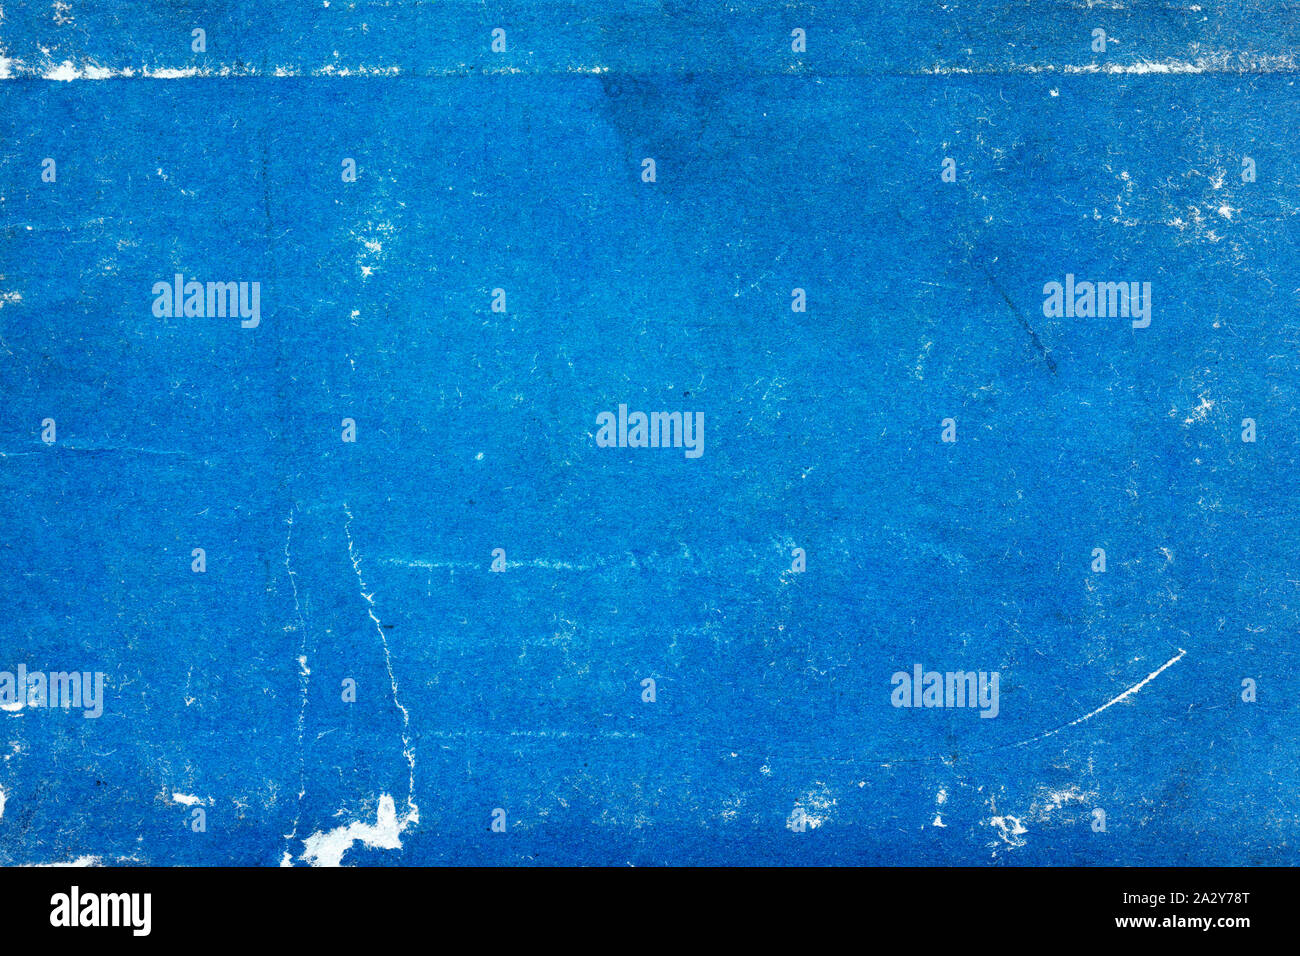 Vintage grunge texture papier détaillée bleu Banque D'Images